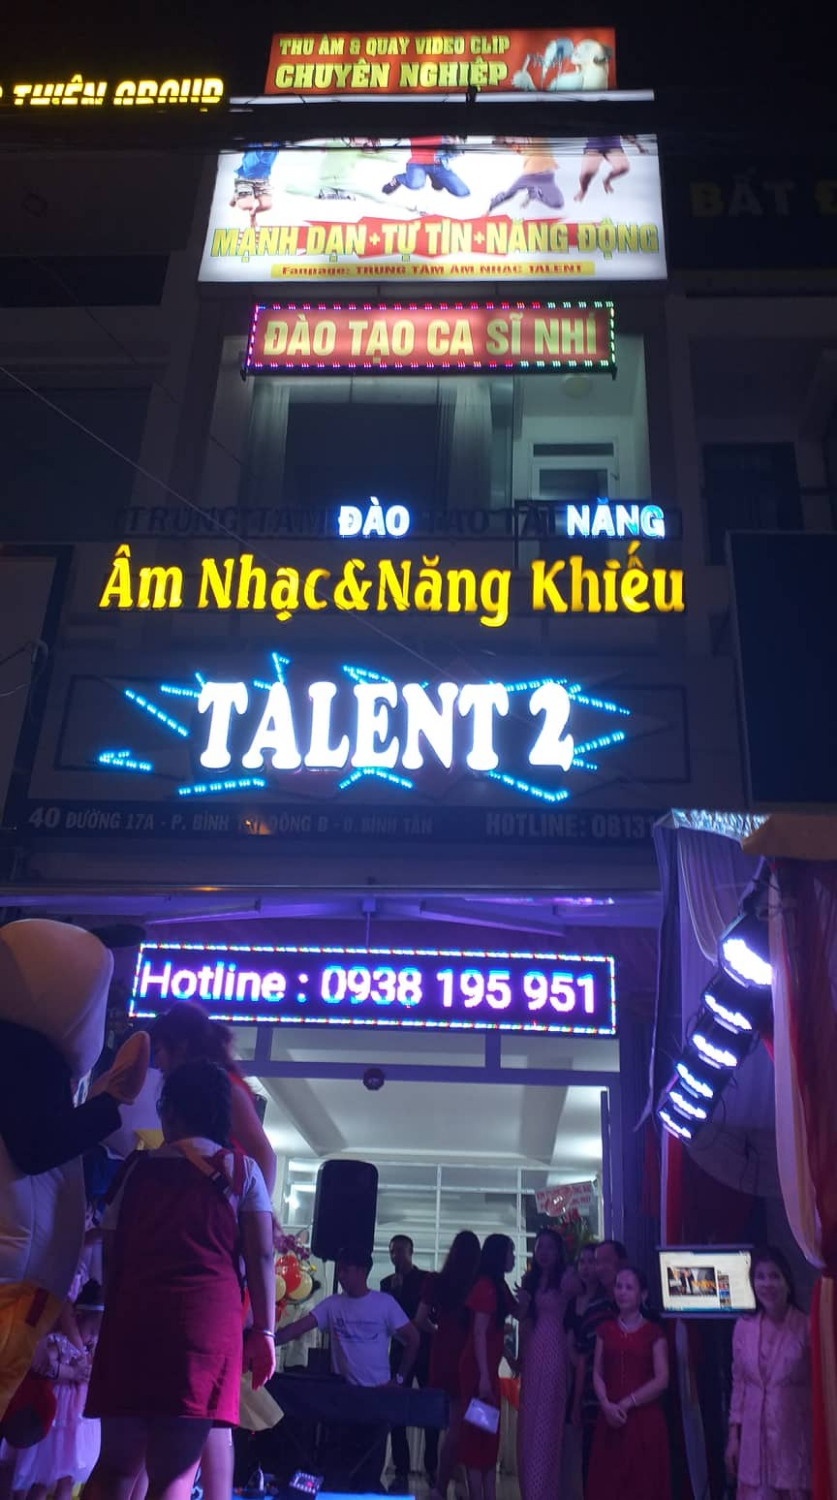 Talent 11